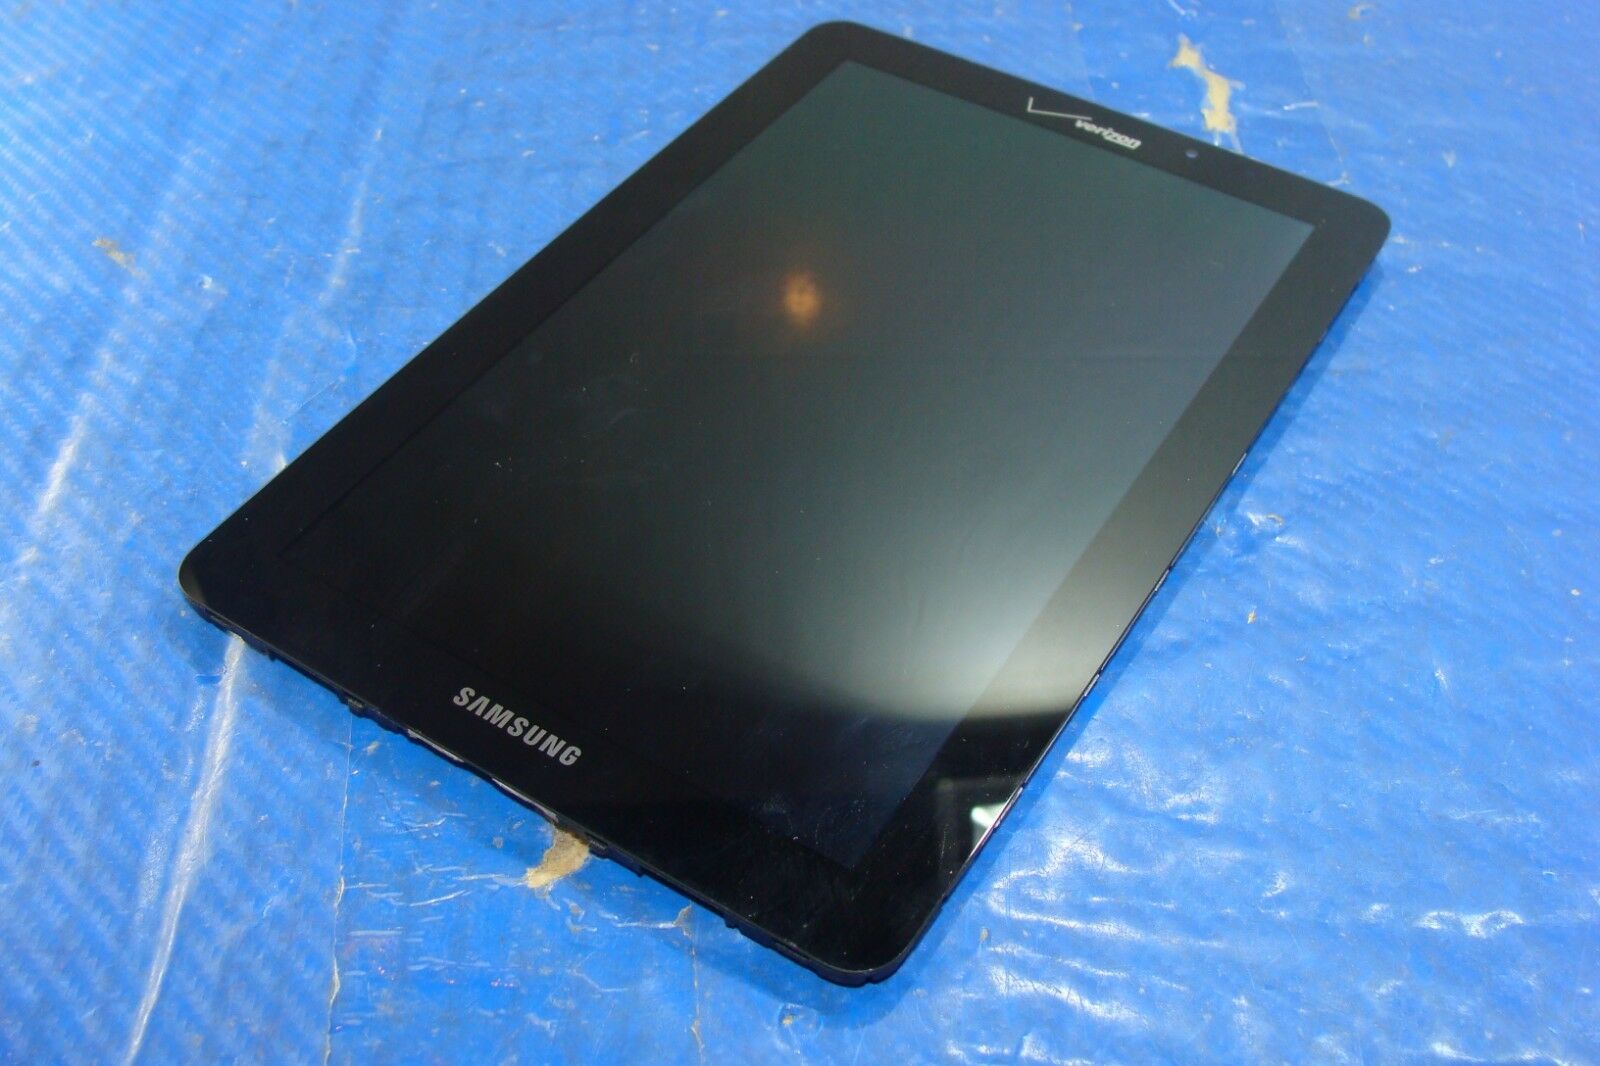 Samsung Galaxy 7.7